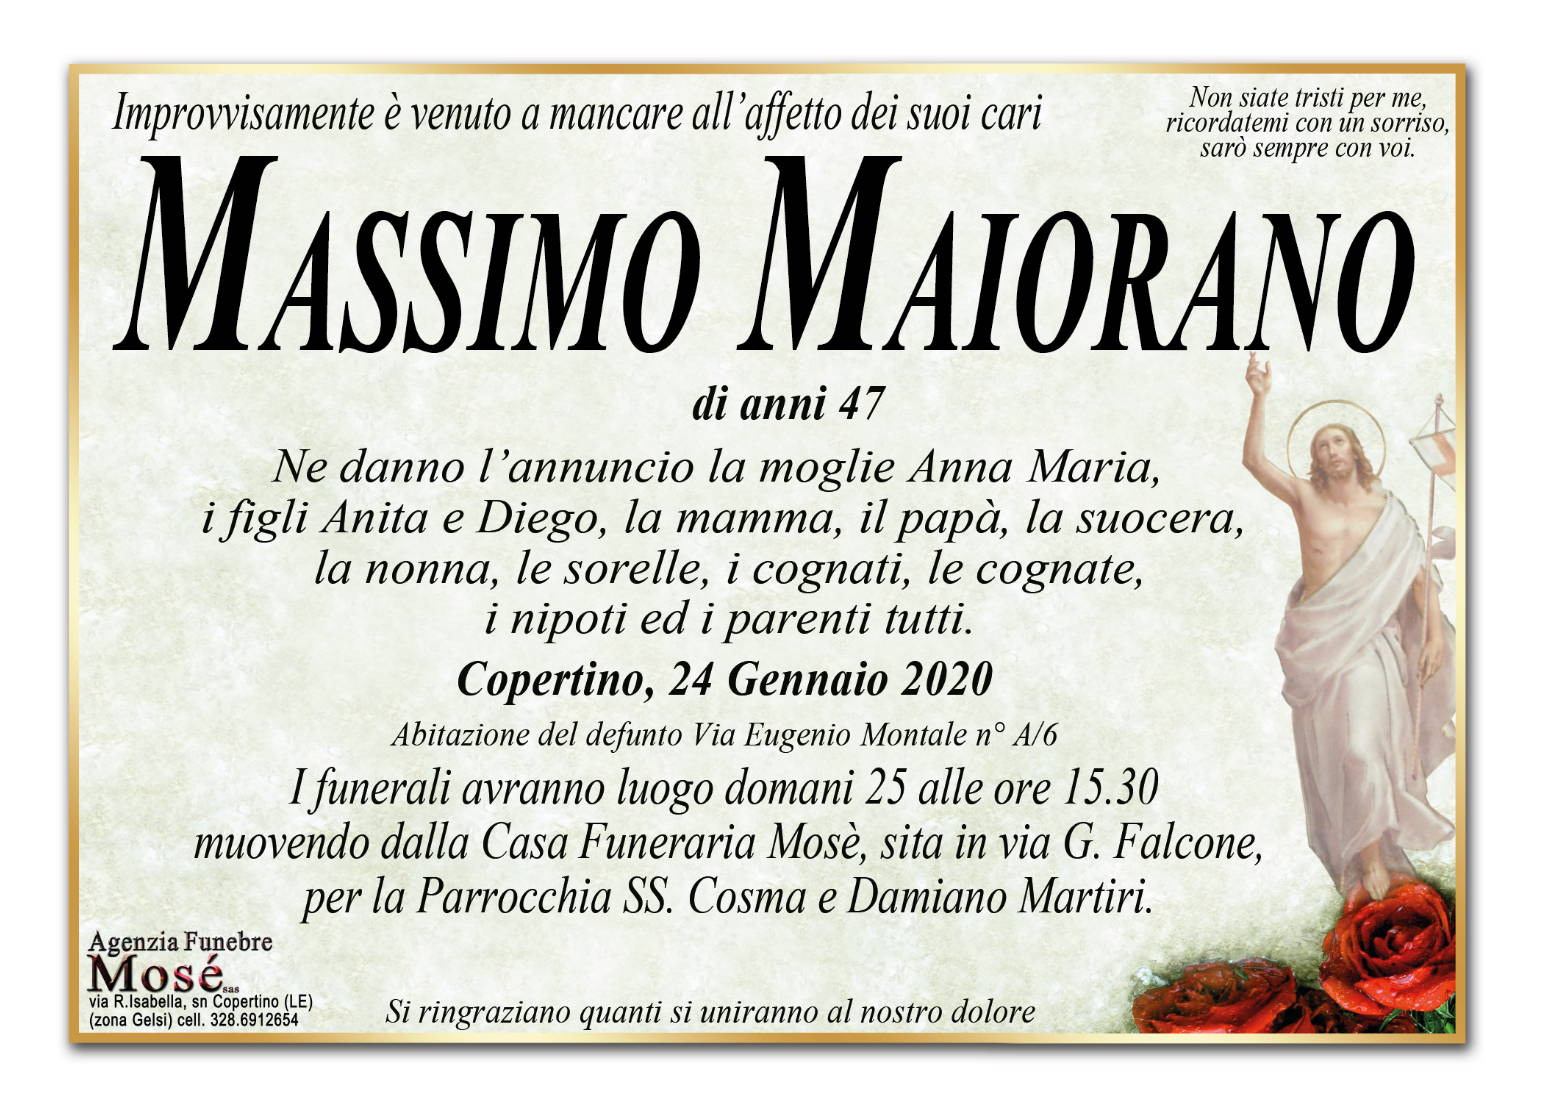 Massimo Maiorano